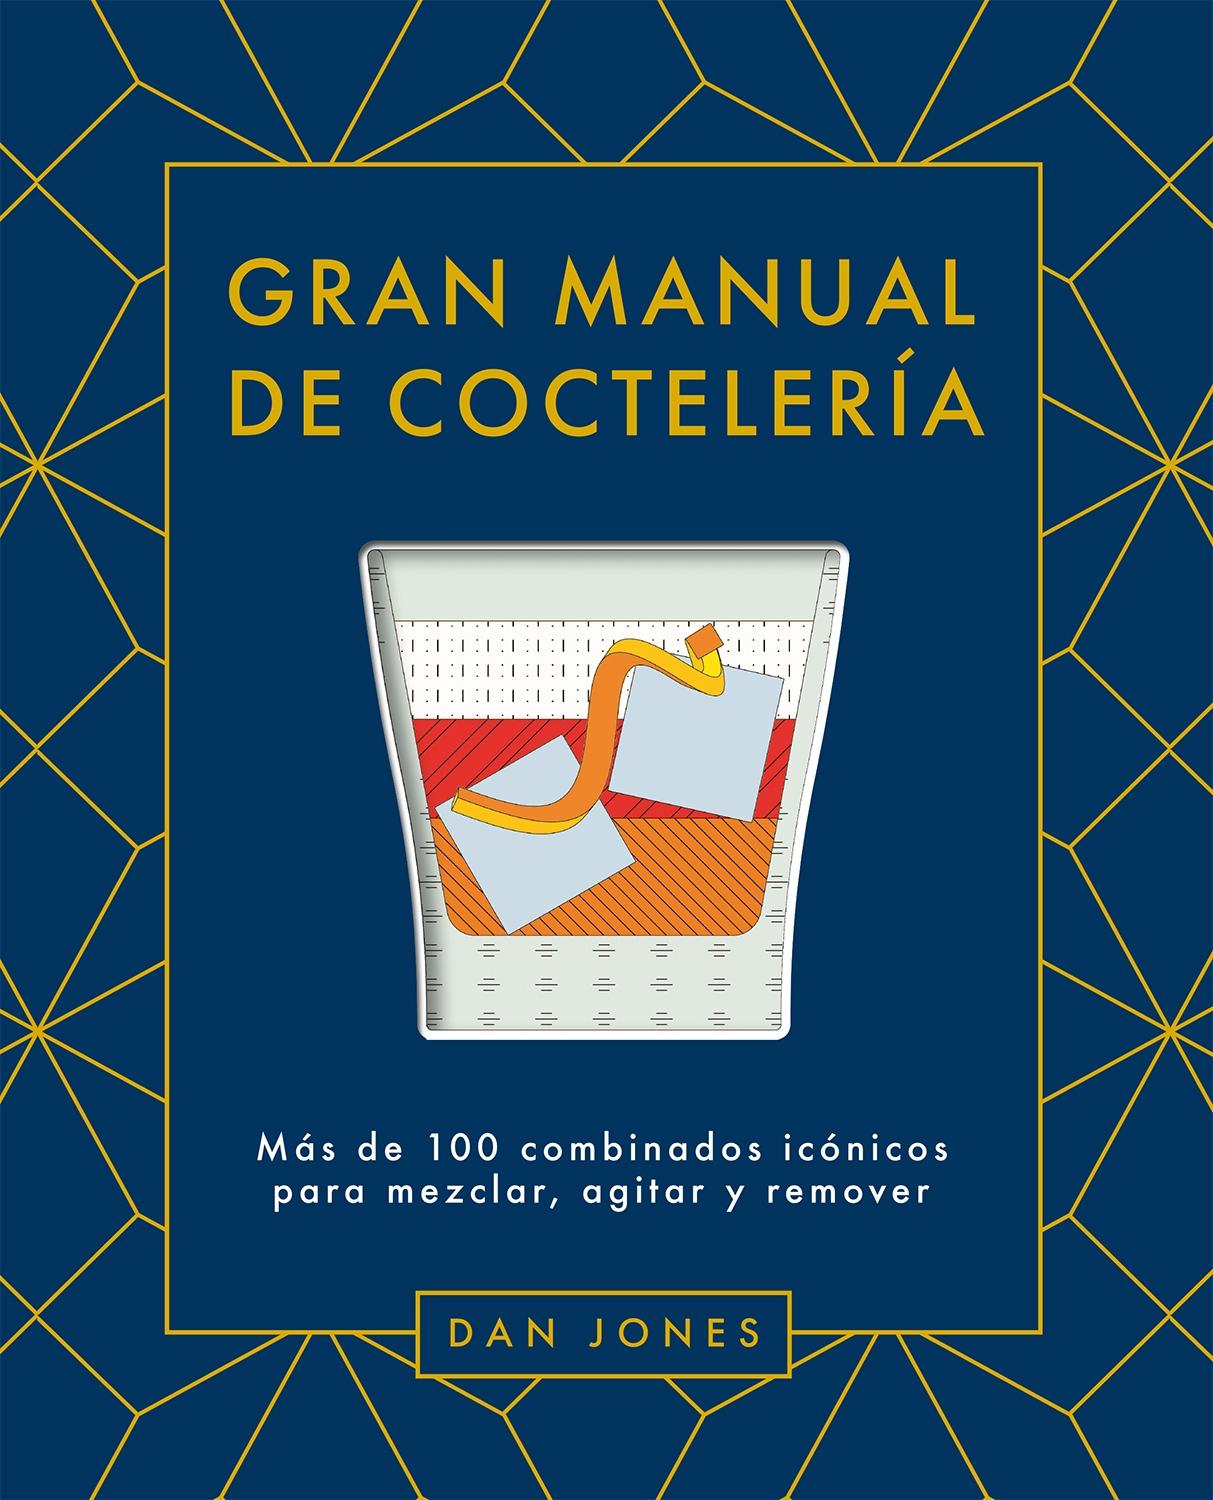 Gran Manual de Coctelería "Más de 100 Combinados Icónicos para Mezclar, Agitar y Remover"